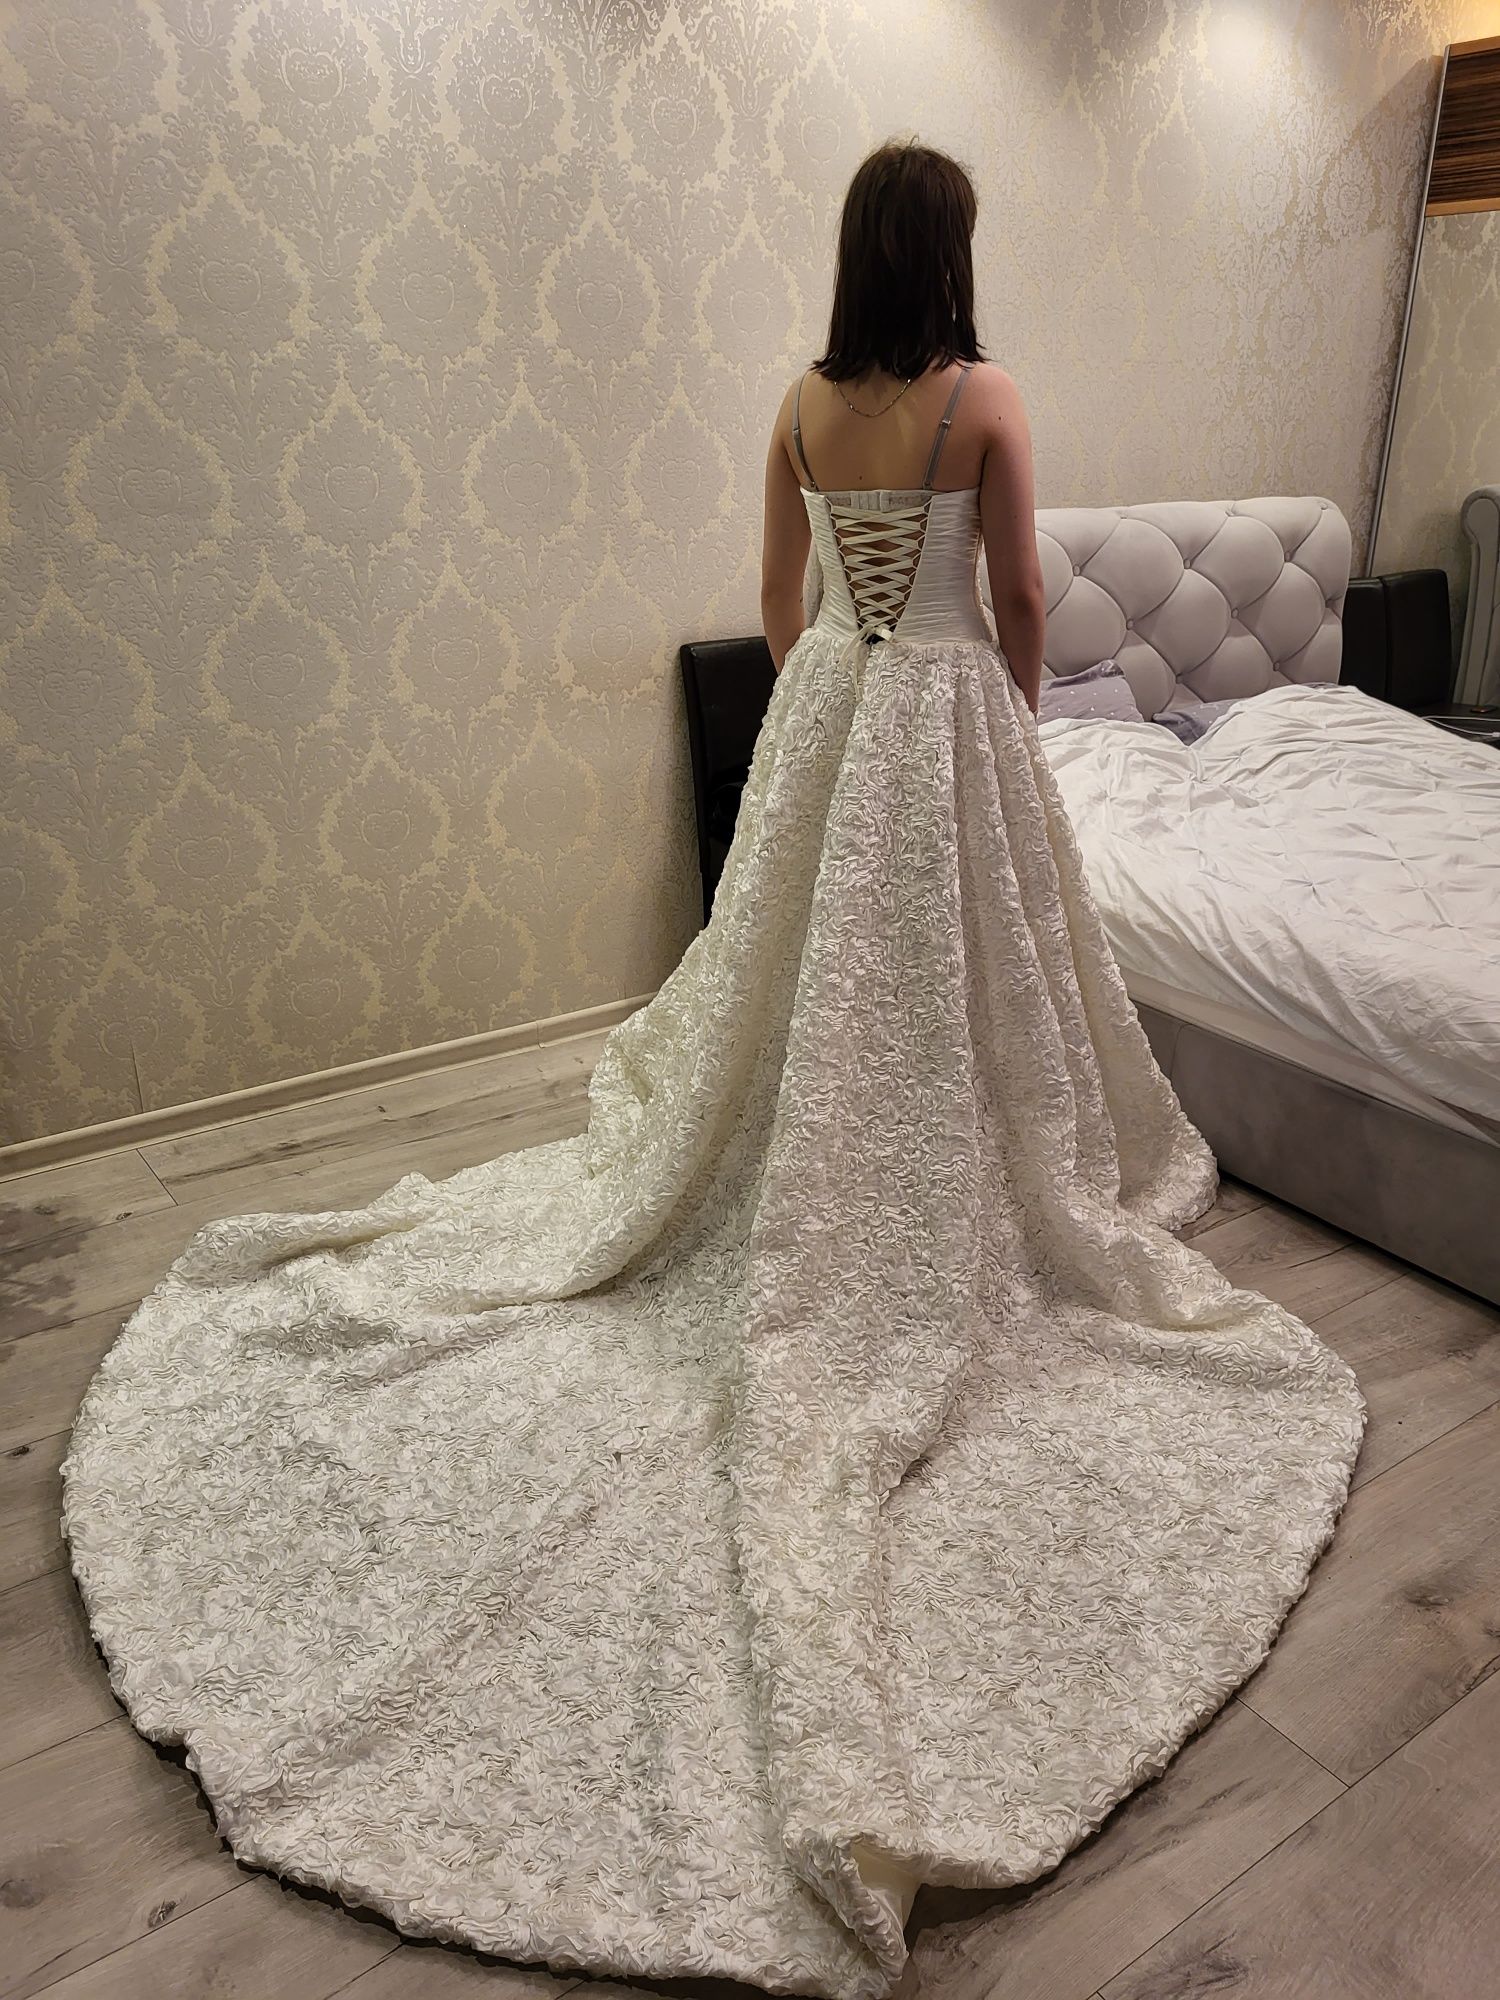 Плаття весільне зі шлейфом, платье свадебное, сукня на xxs- s